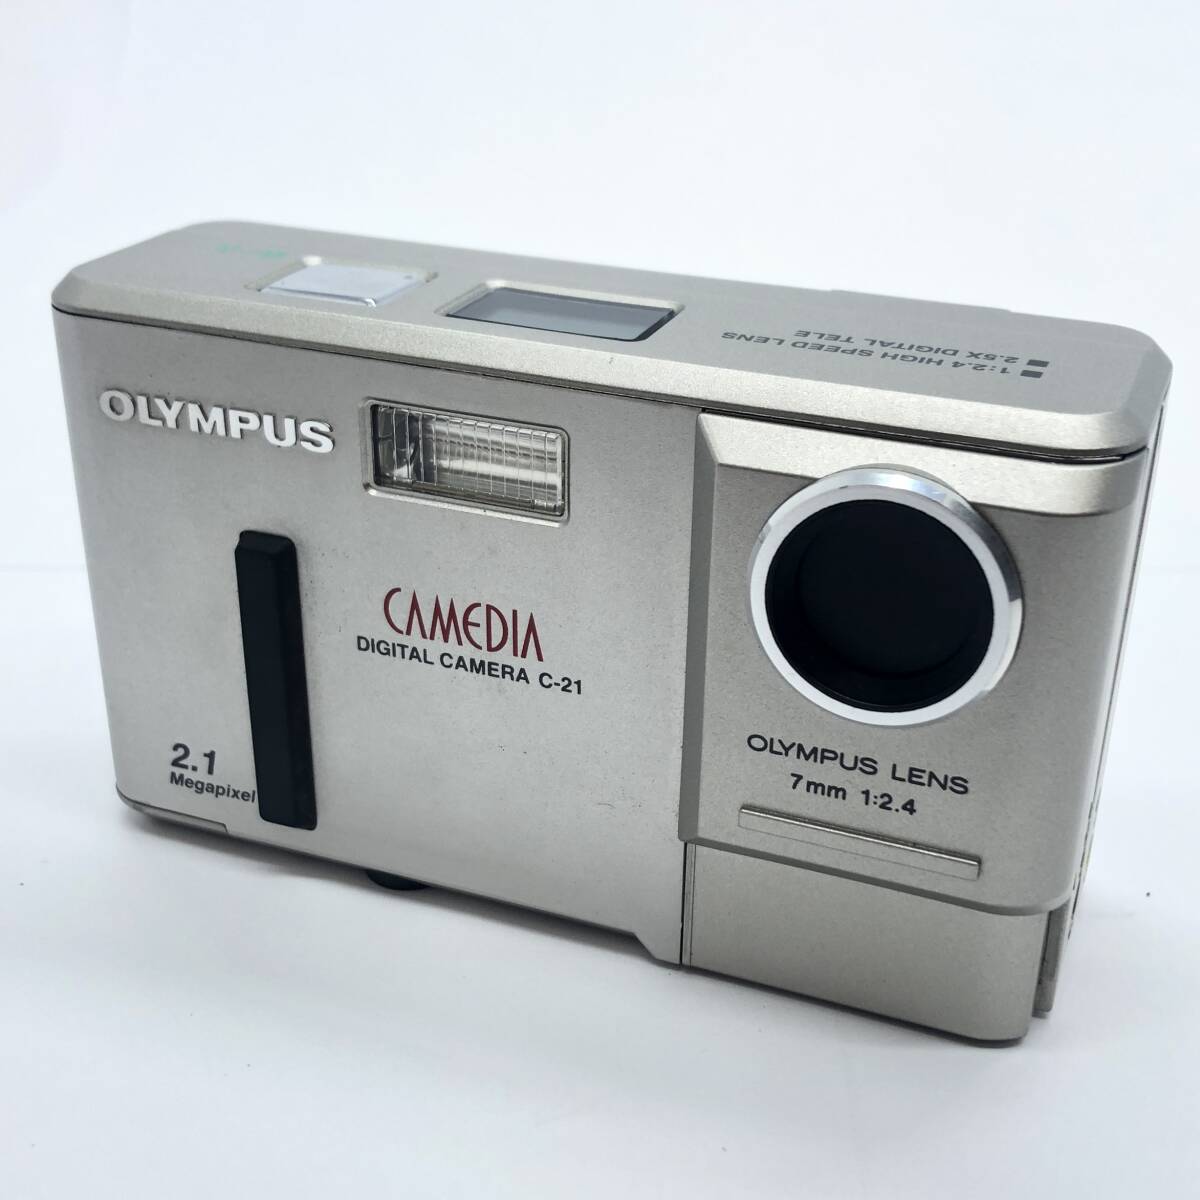 OLYMPUS オリンパス CAMEDIA カメディア DIGITAL CAMERA C-21 7mm 1:2.4 2.1 Megapixel コンパクト フイルムカメラ カメラ 現状品の画像3